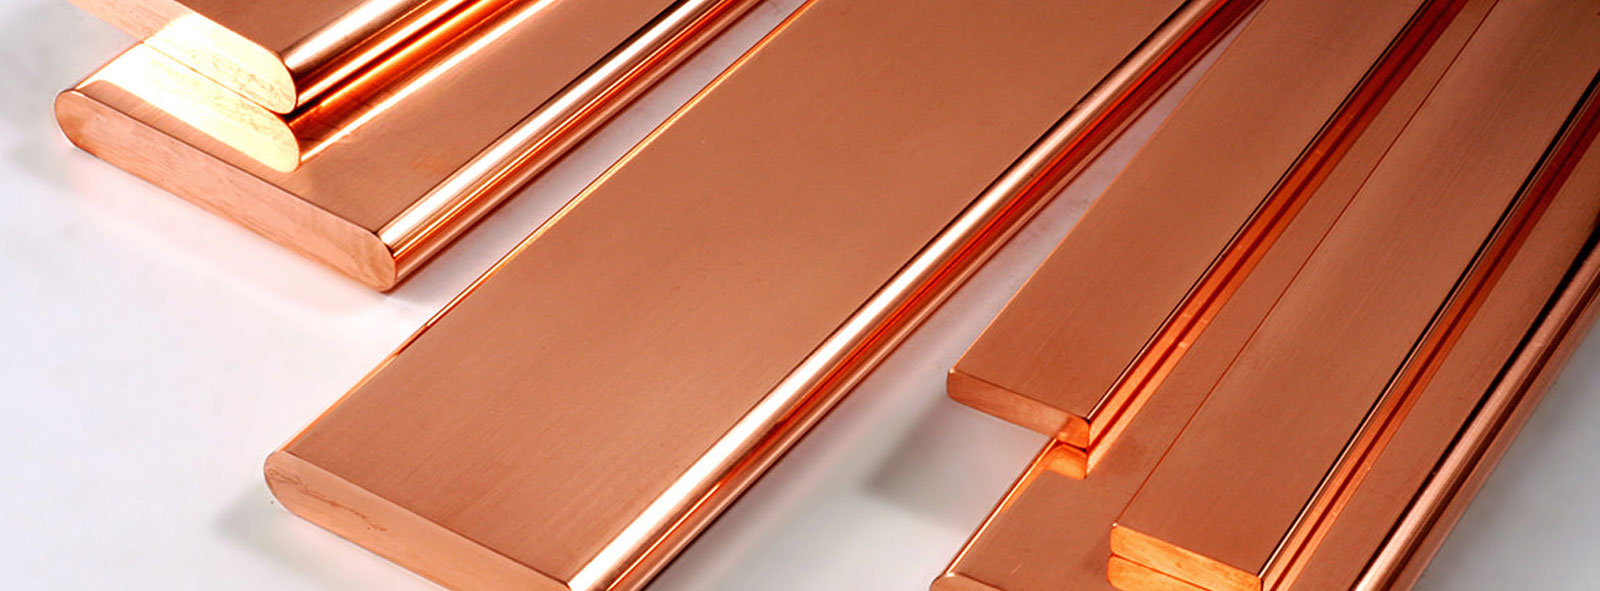 copper-busbar-manufacturers-india